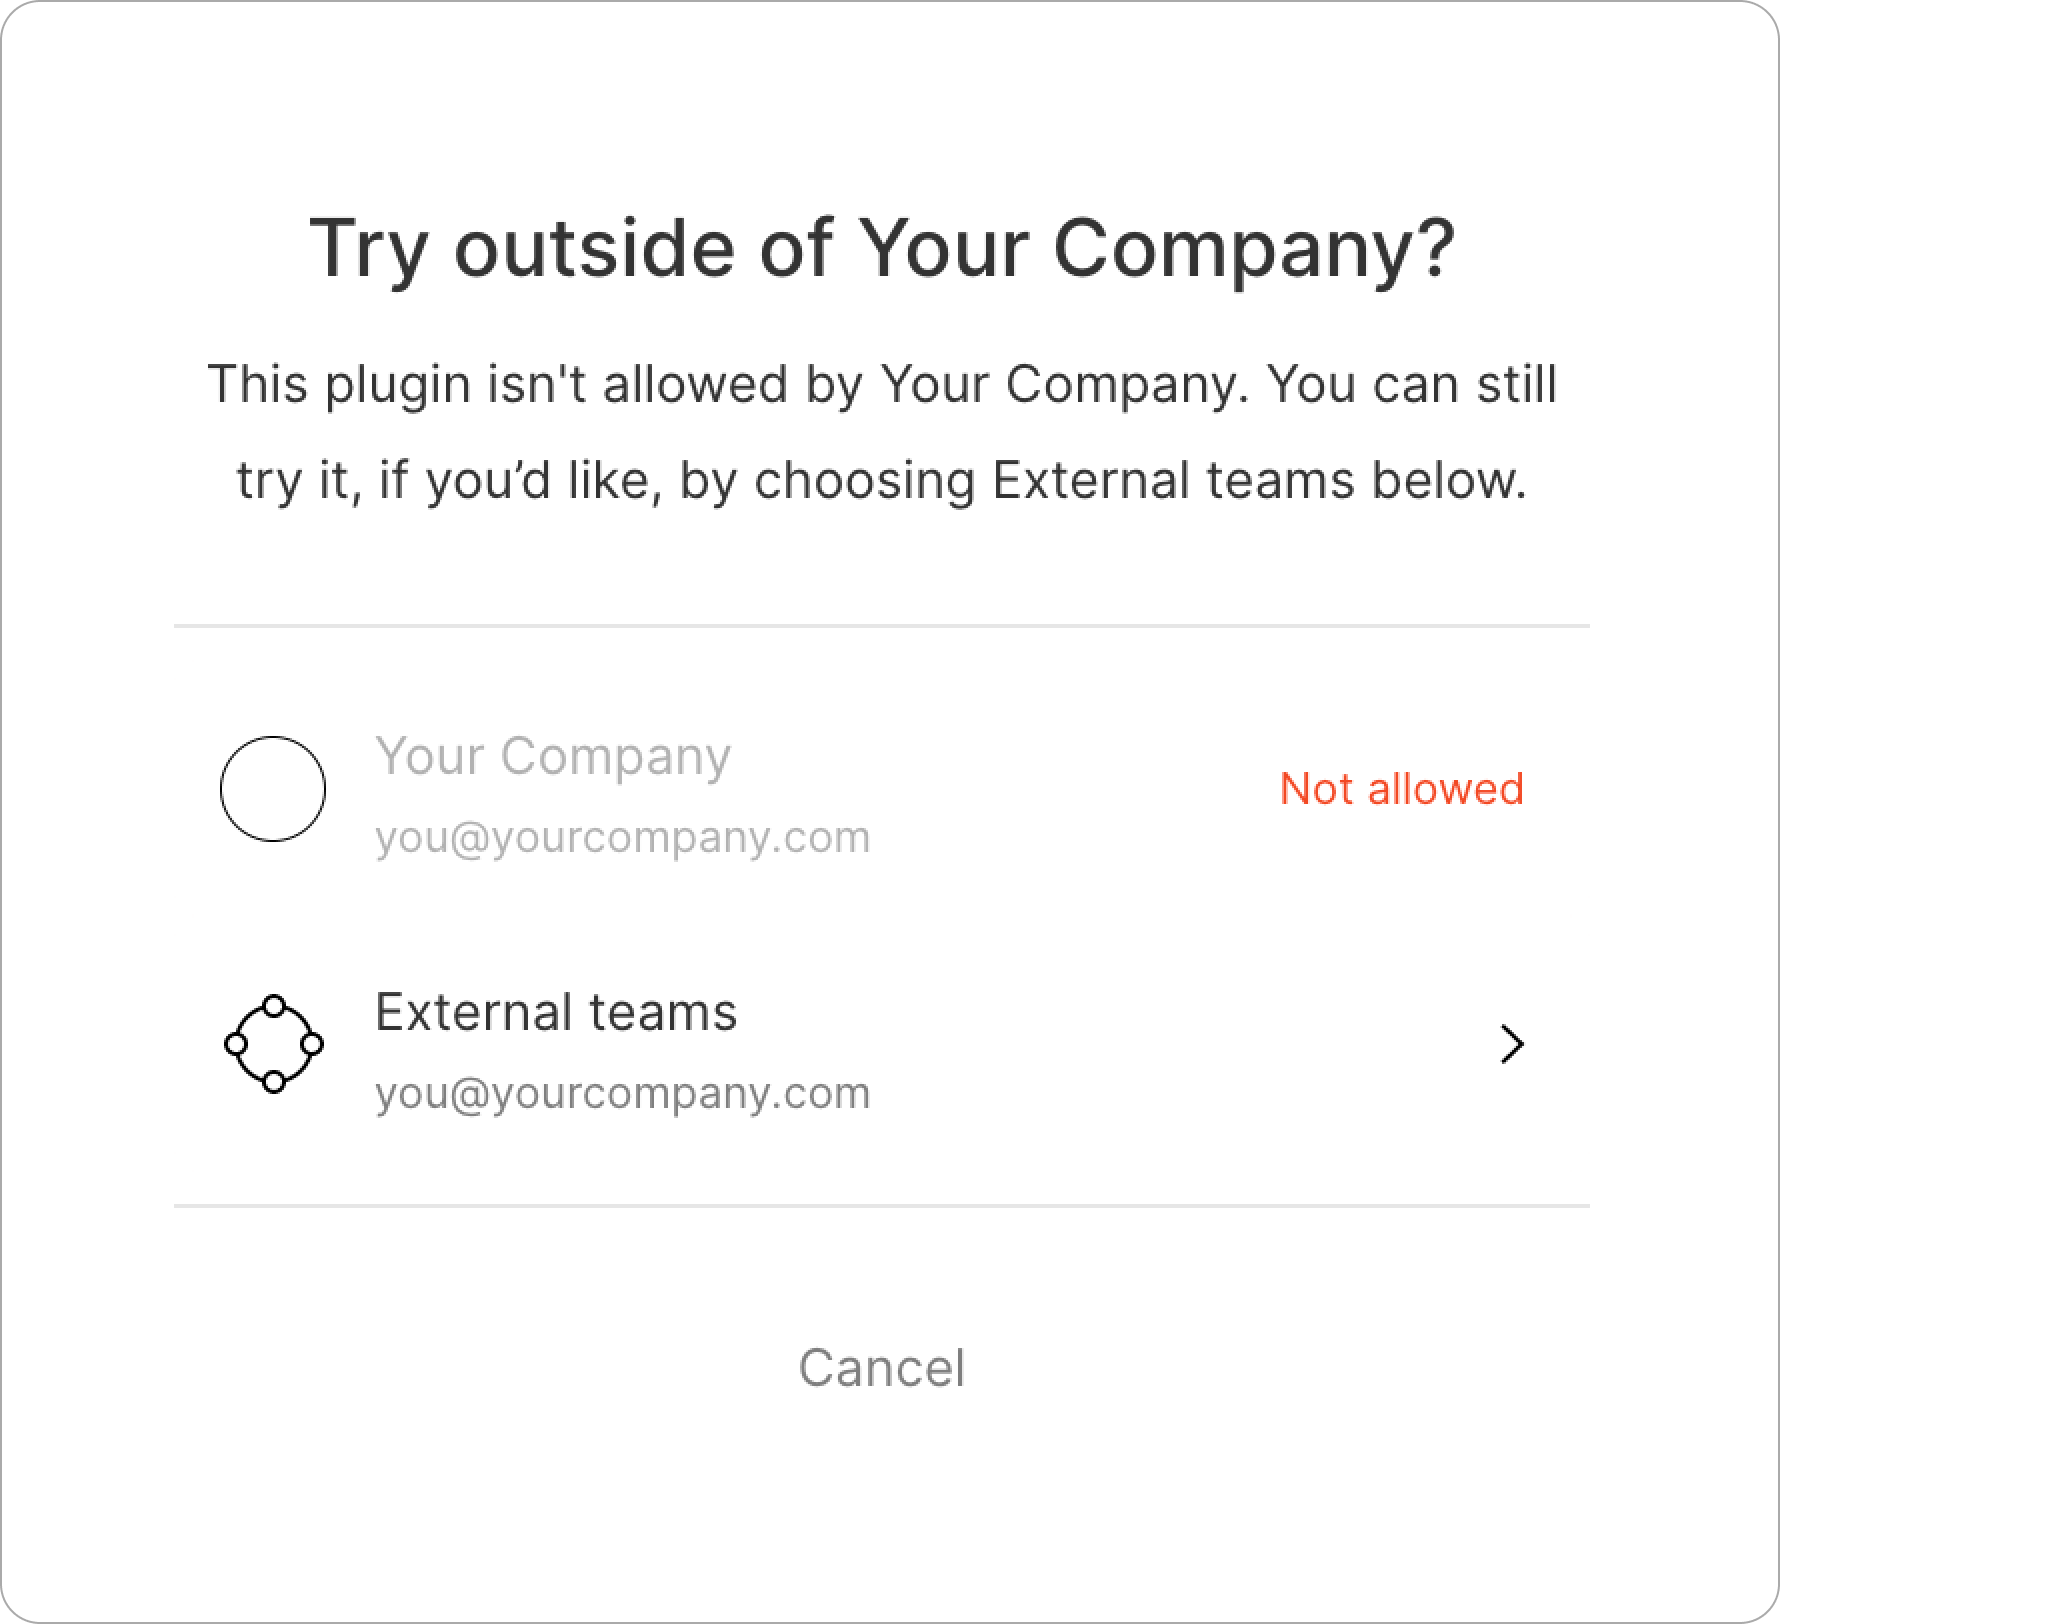 Tuỳ chọn External teams (Nhóm bên ngoài) trong hộp thoại